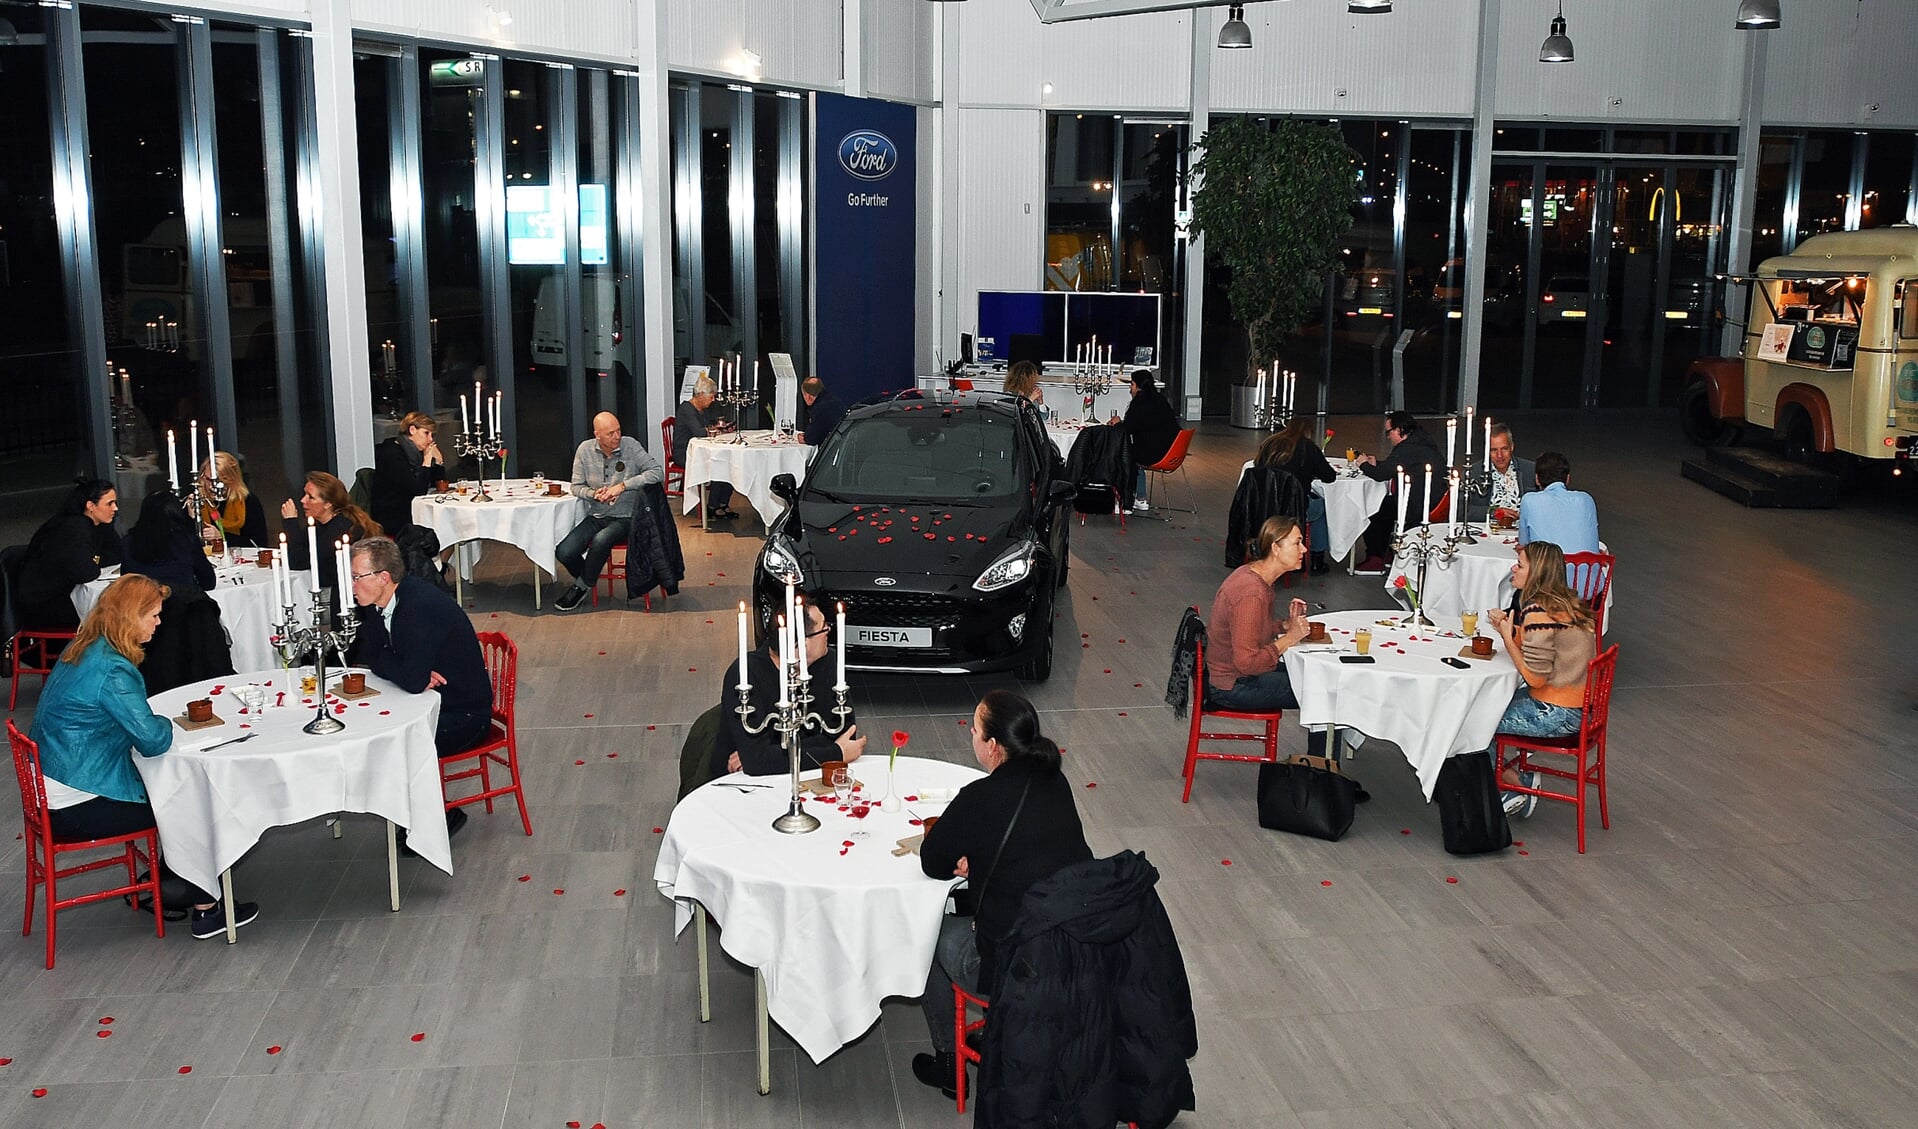 Romantisch dineren tijdens de First-Date met de nieuwste Ford in Zaandam.